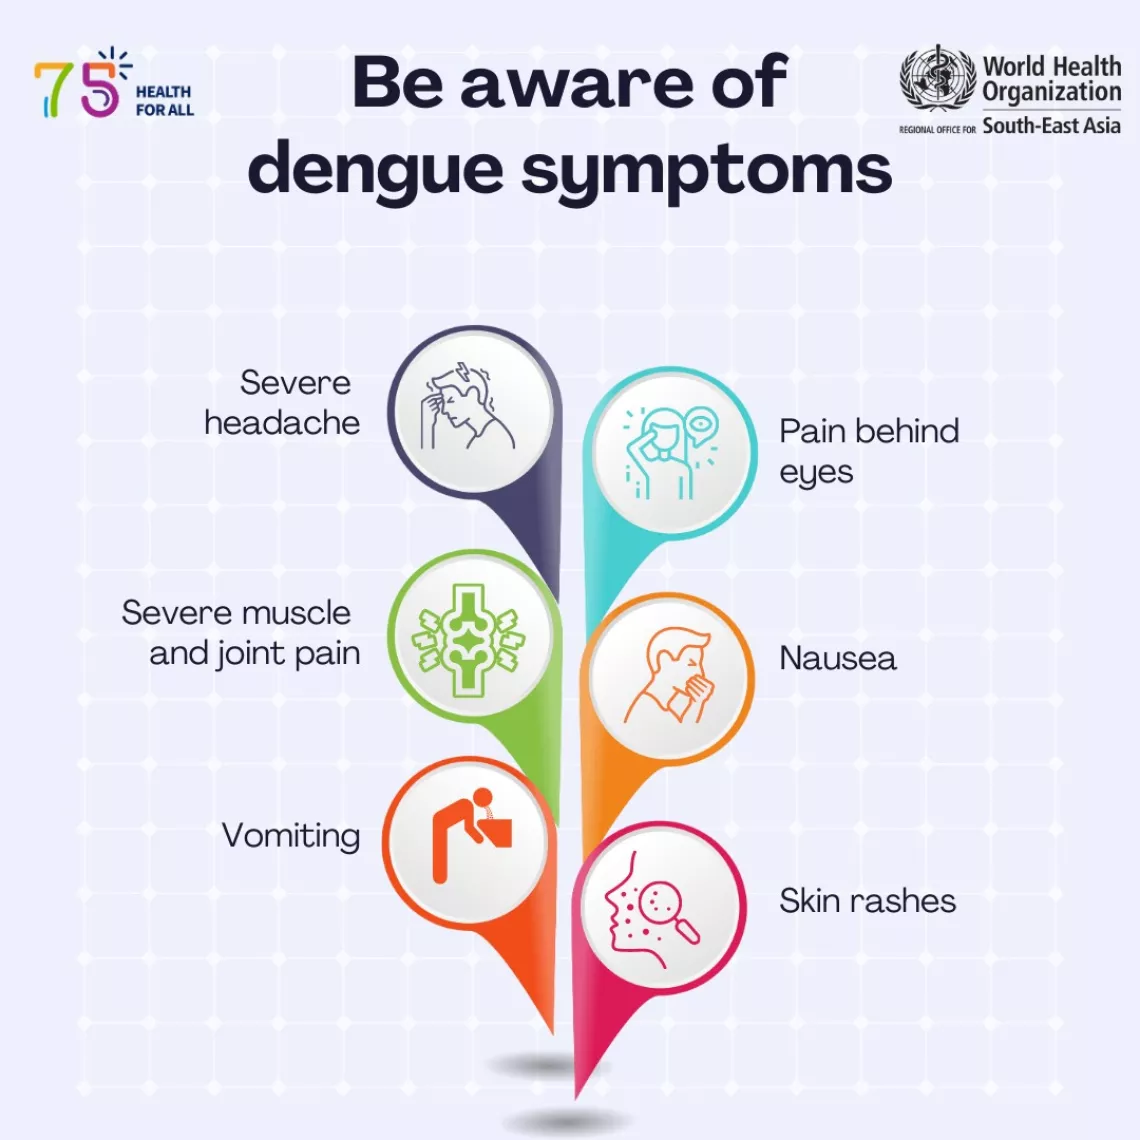 Be aware of dengue symptoms